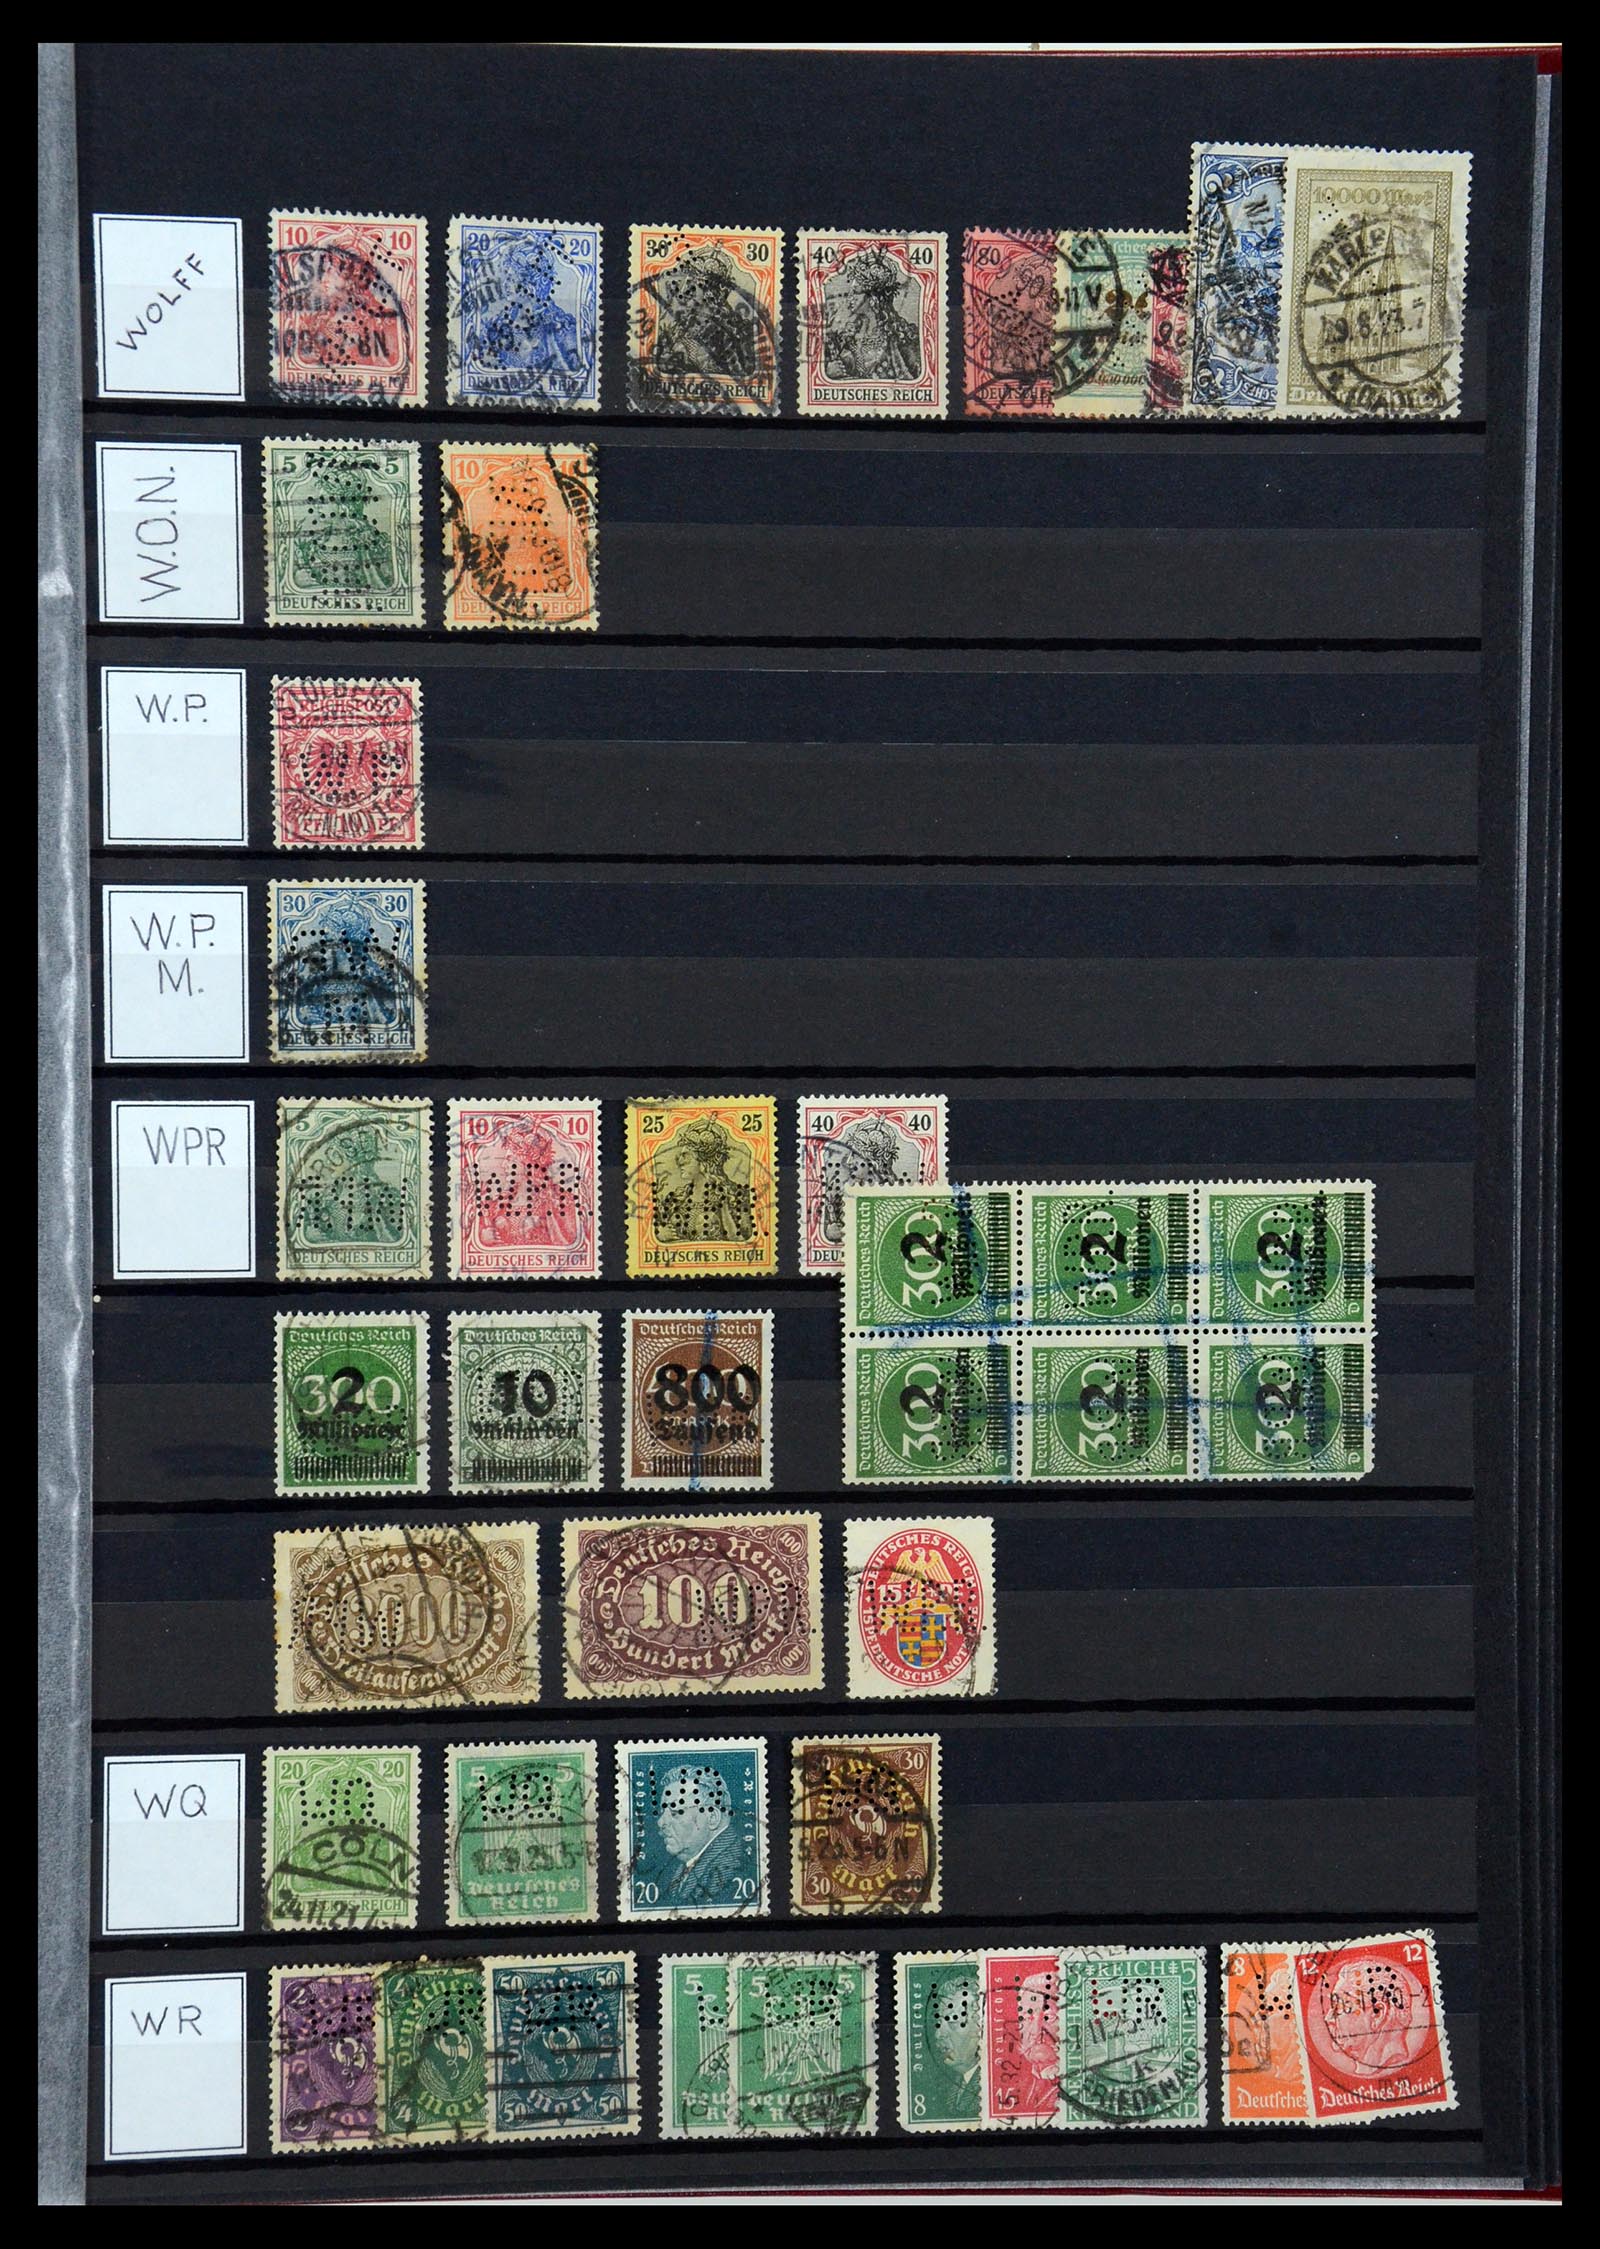 36405 342 - Stamp collection 36405 German Reich perfins 1880-1945.